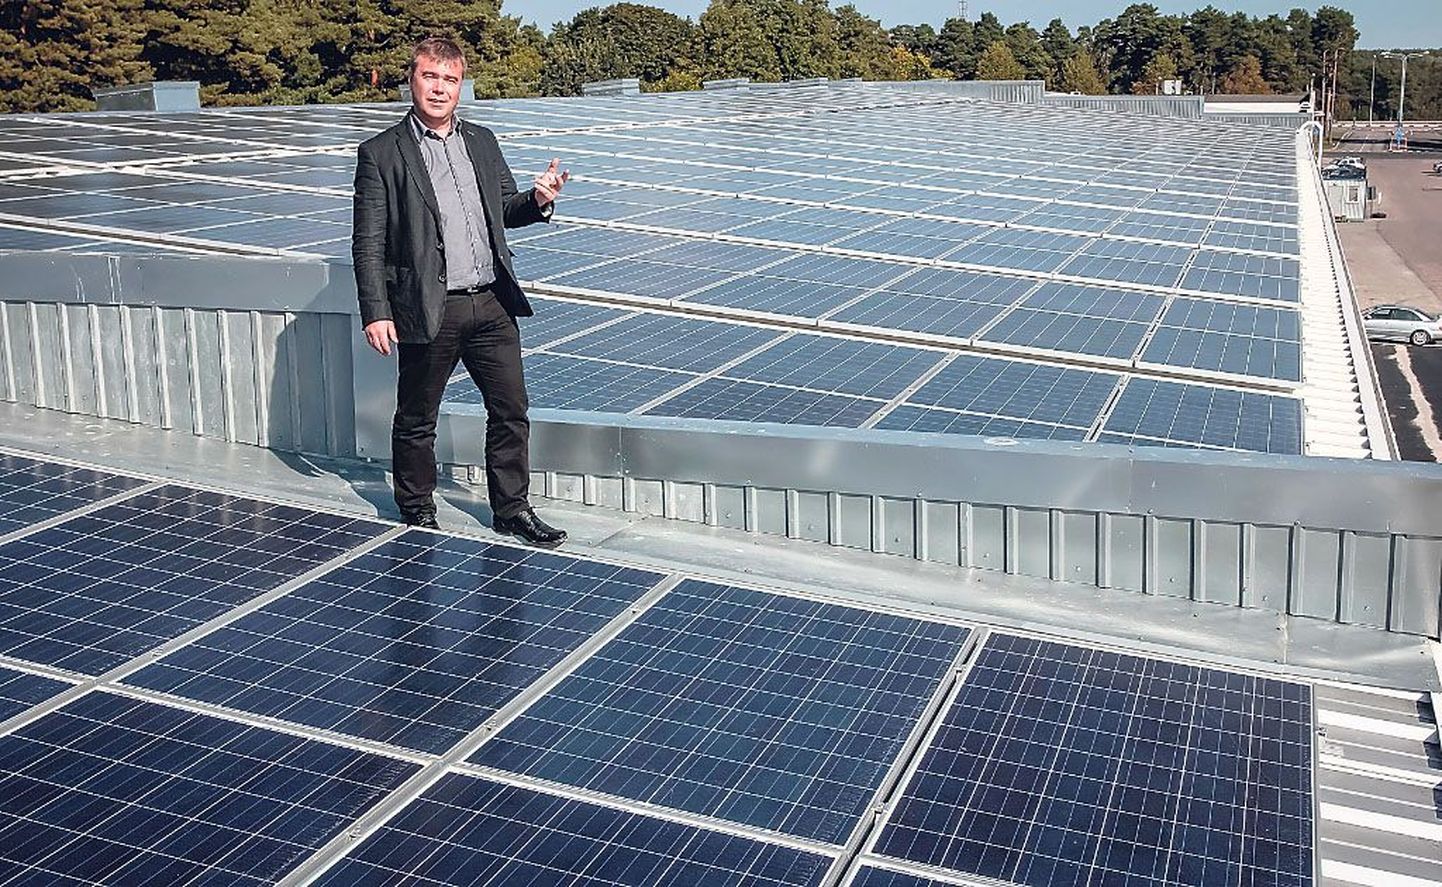 Agal Kinnisvarade juhatuse liige Ago Kalmer ostis 705 päikesepaneeli, mis võtavad enda alla ligemale 1300 ruutmeetrit katusepinda.